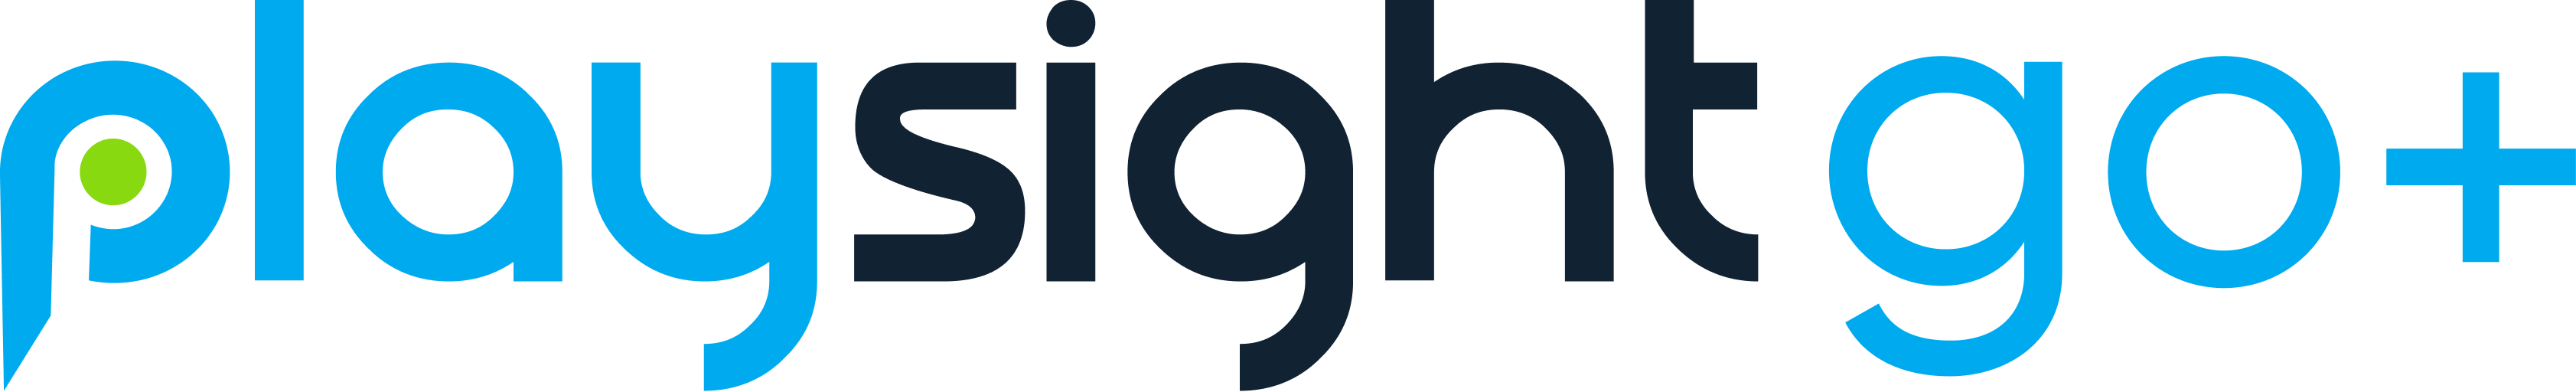 Logo Playsight Go Plus Https://Playsight.com